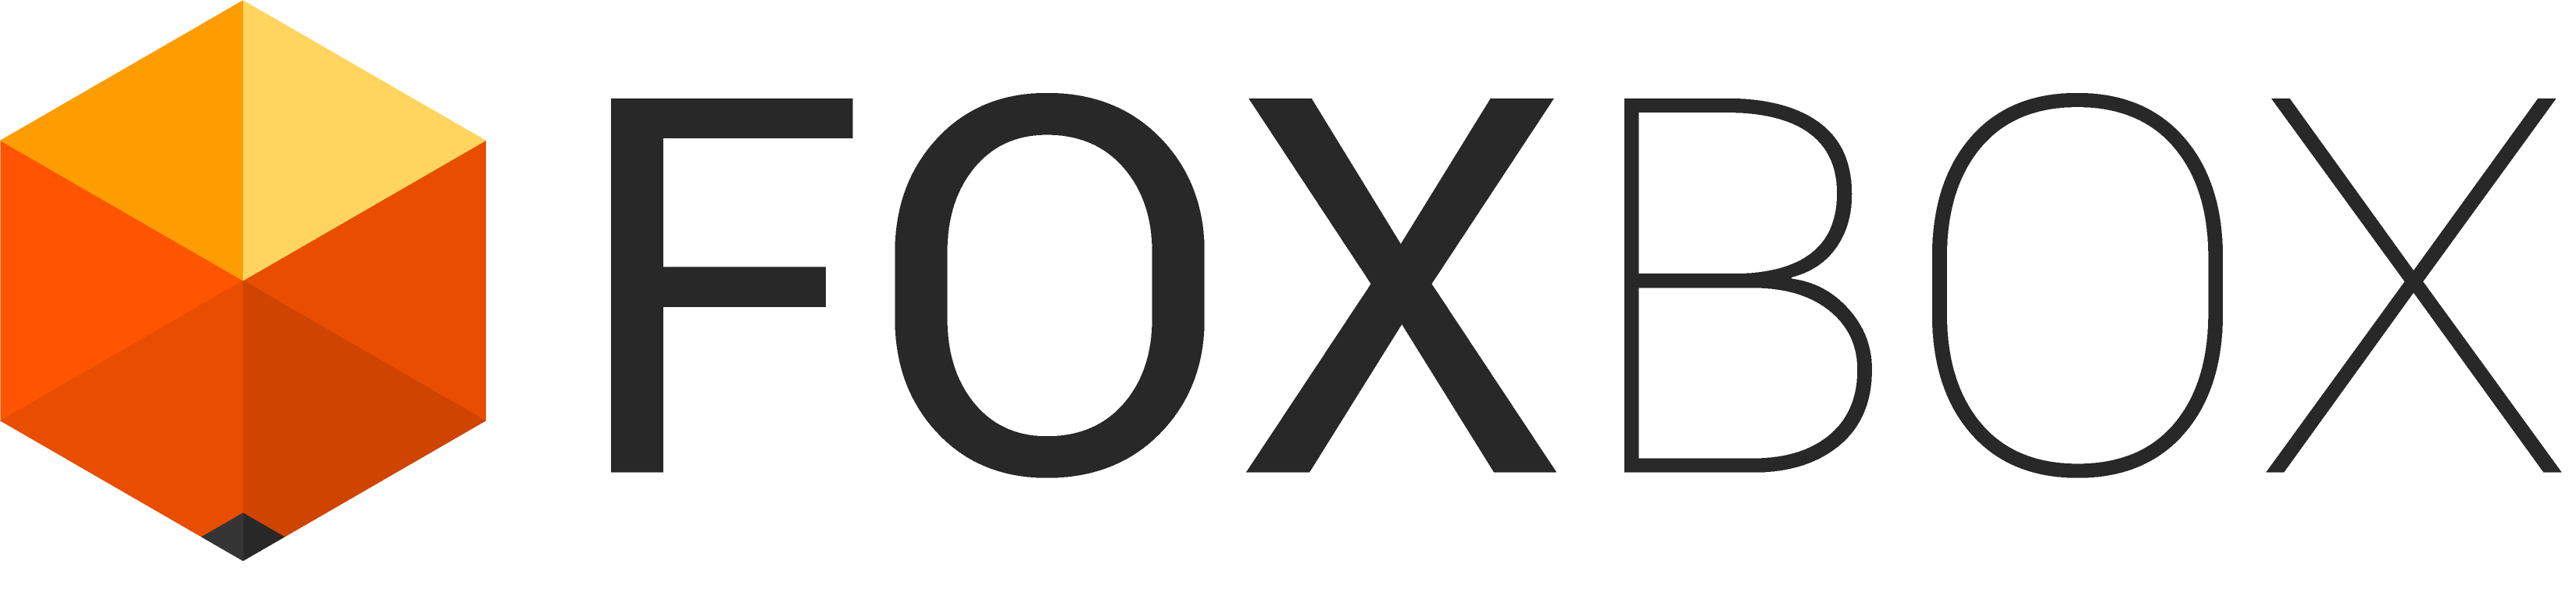 FOXBOX.sk